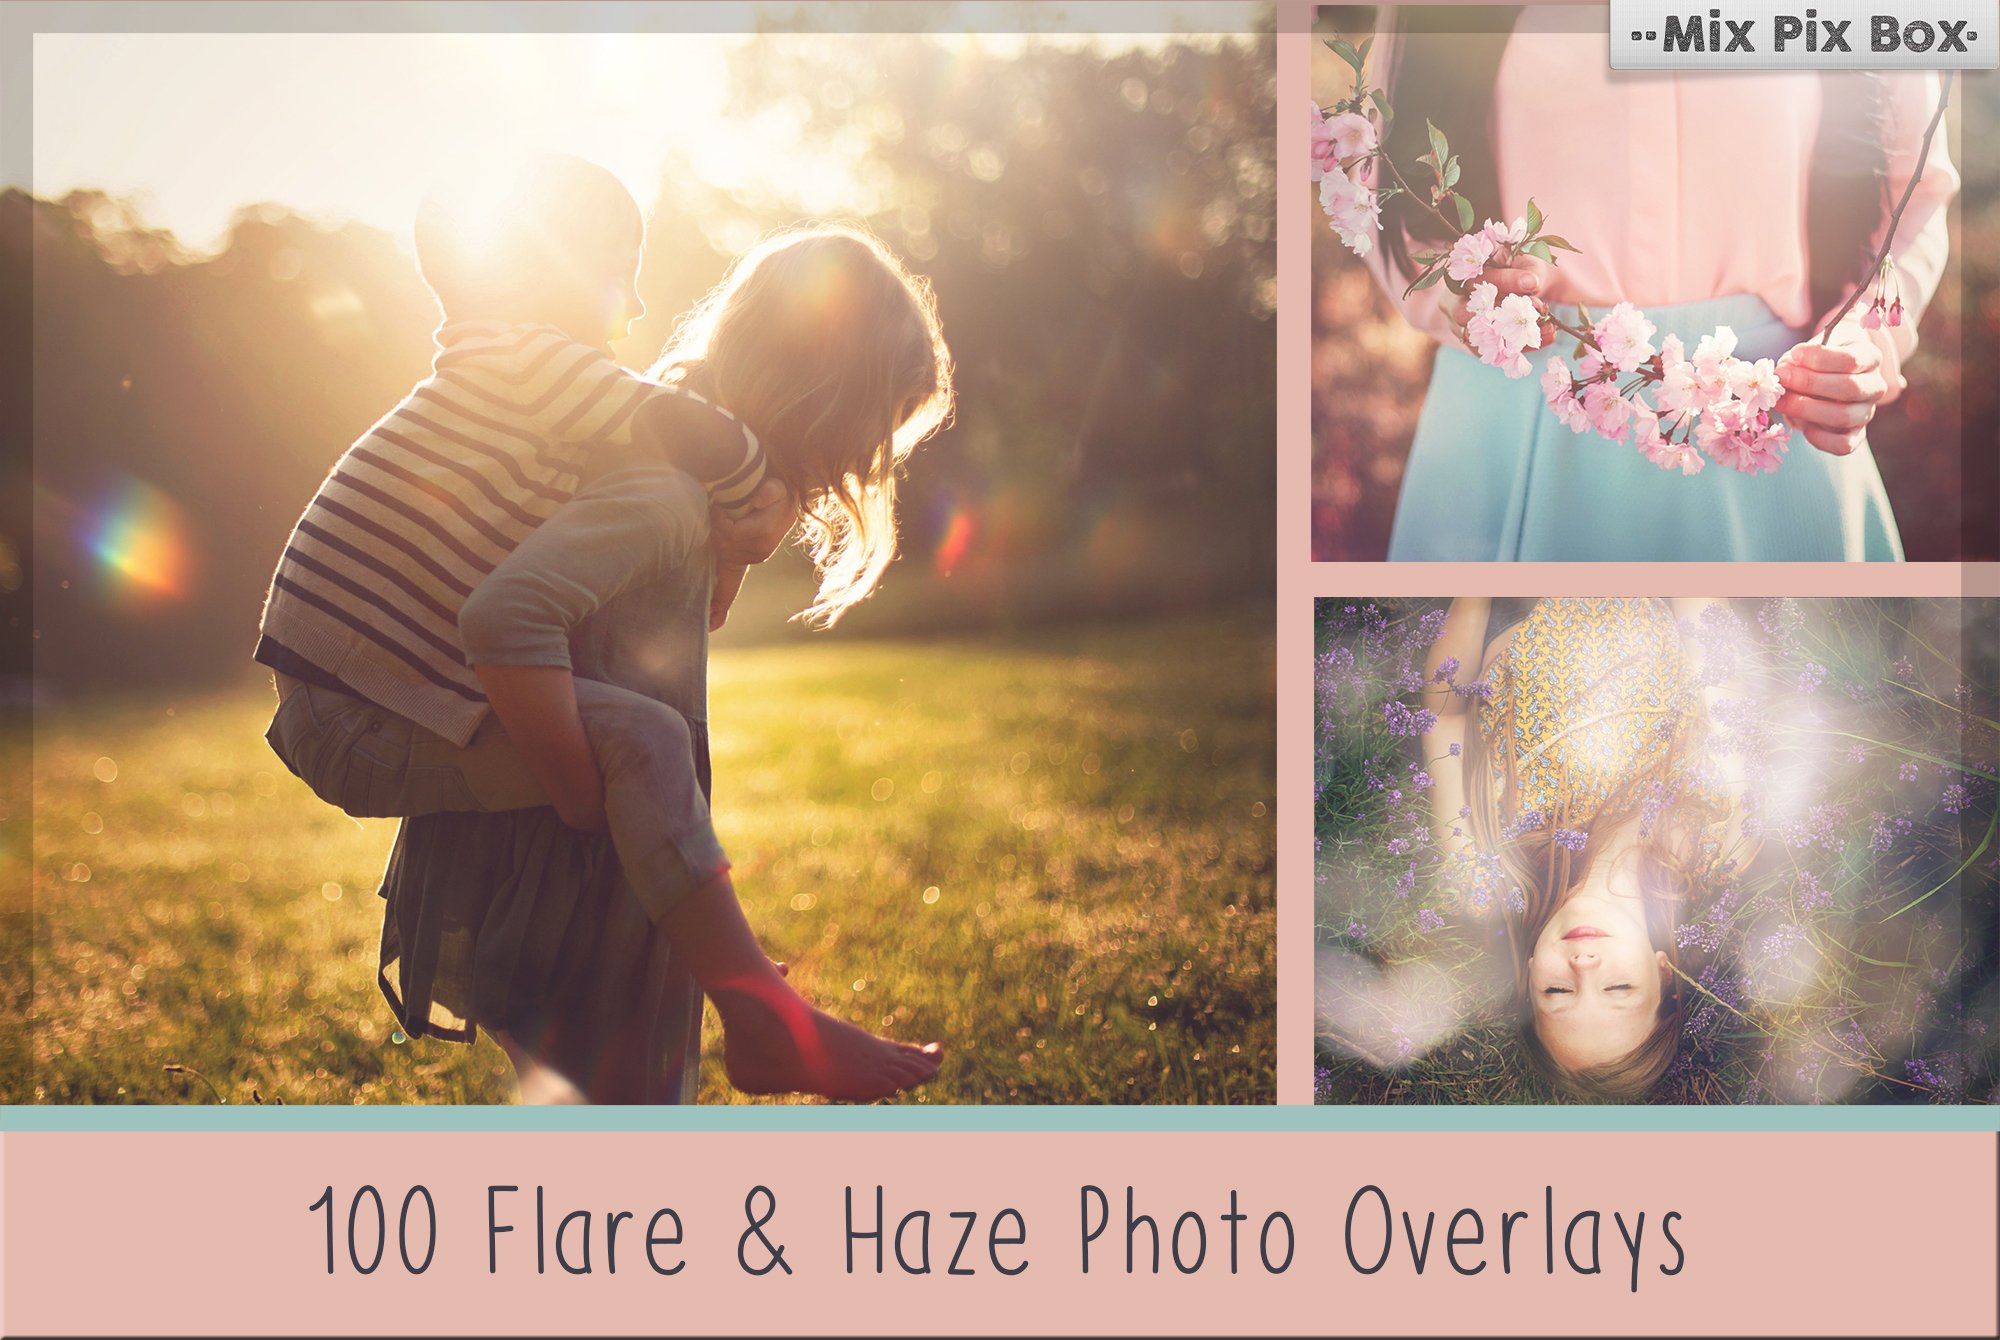 100 Sun Flare & Haze Overlayscover image.